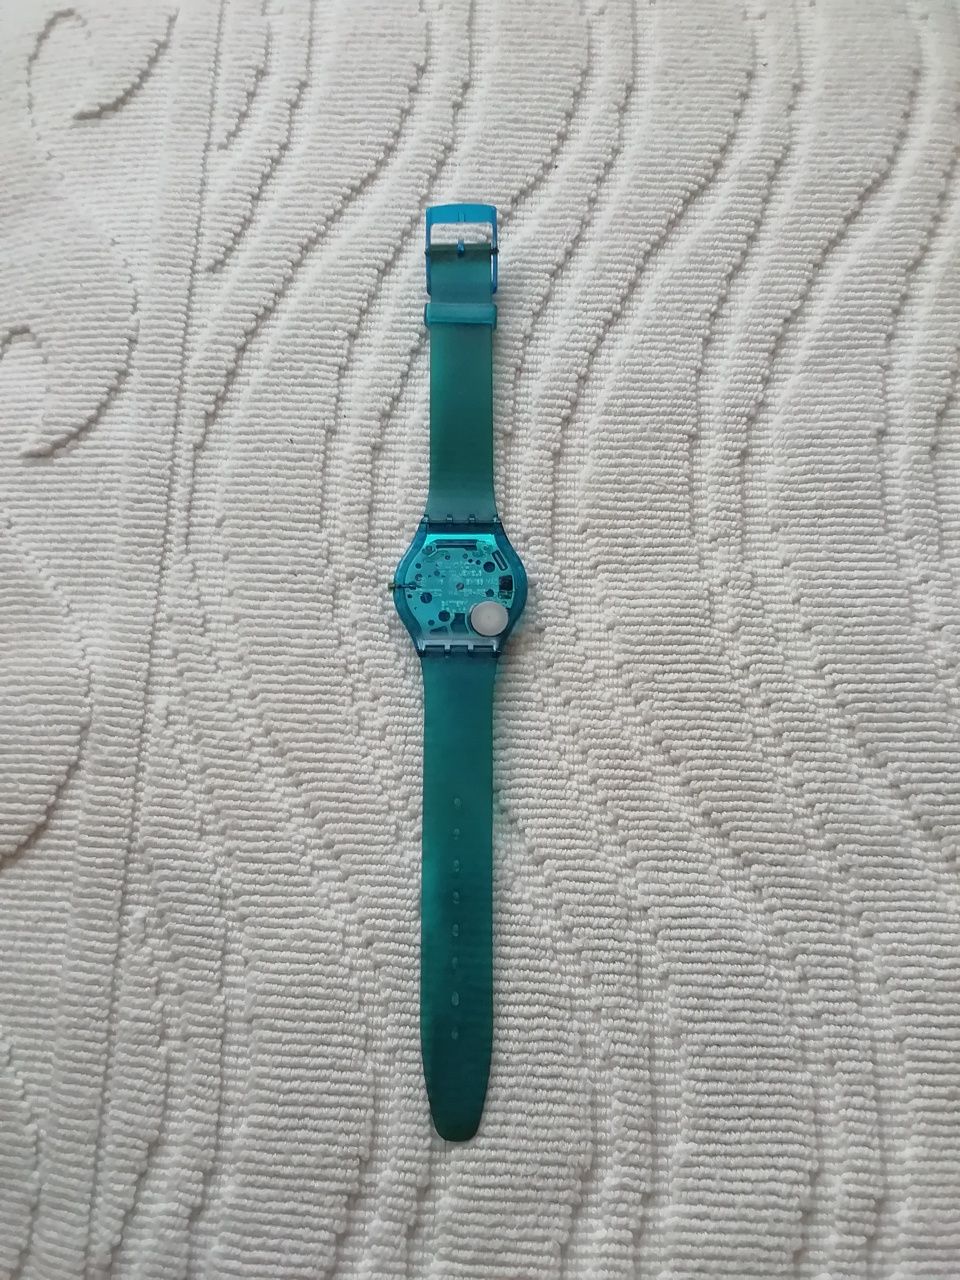 Relógio Swatch, de 2000, avariado